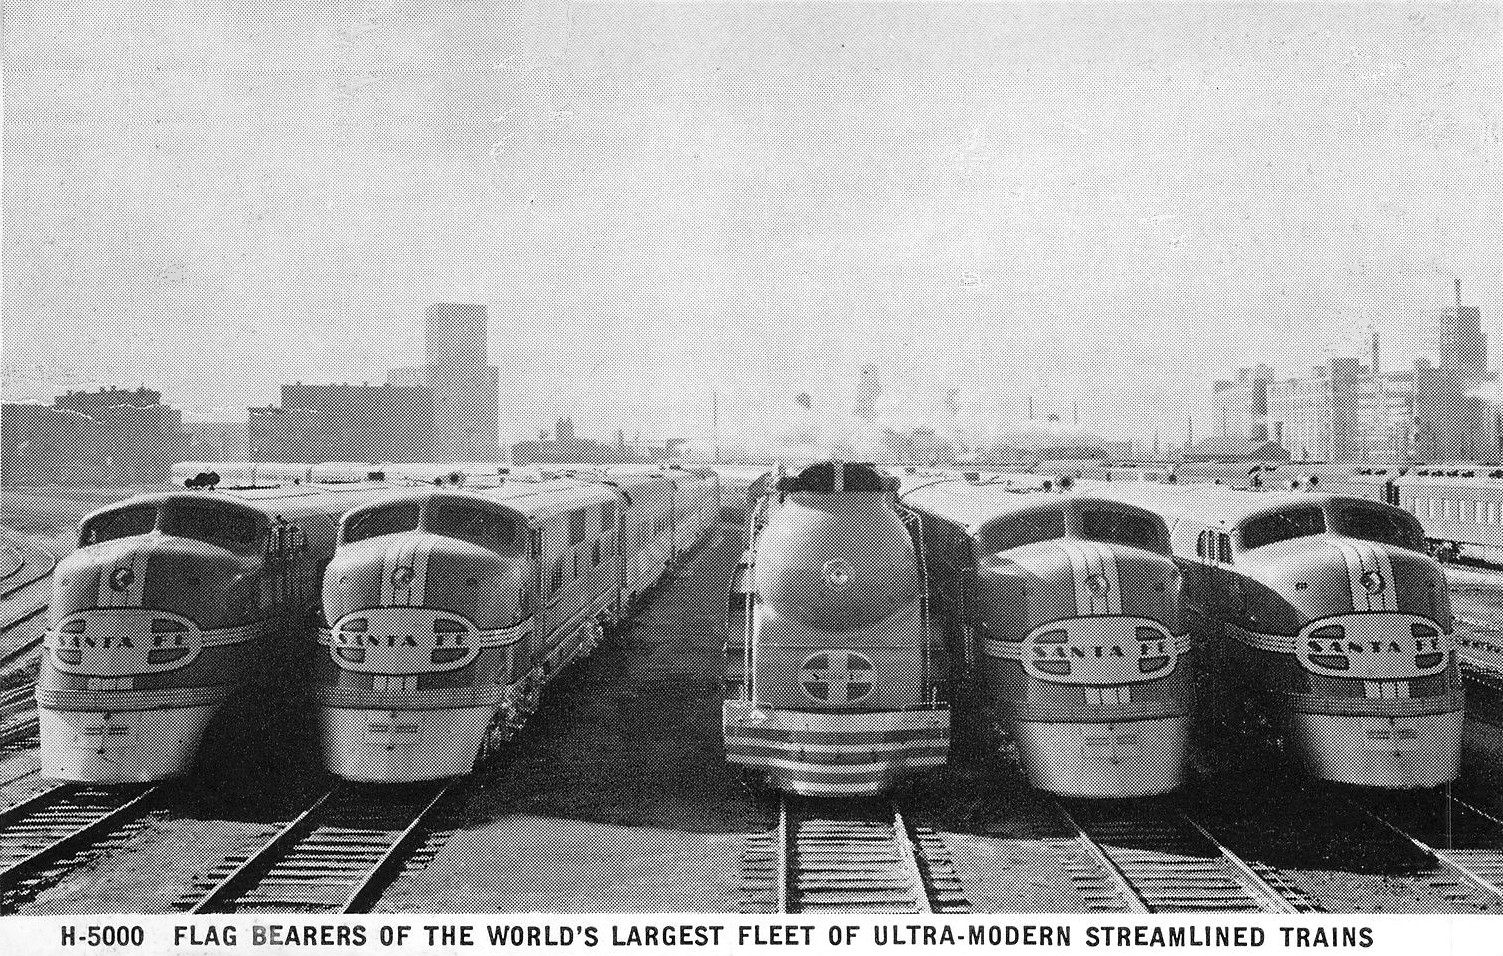 Santa_Fe_passenger_locomotives_circa_1938.JPG